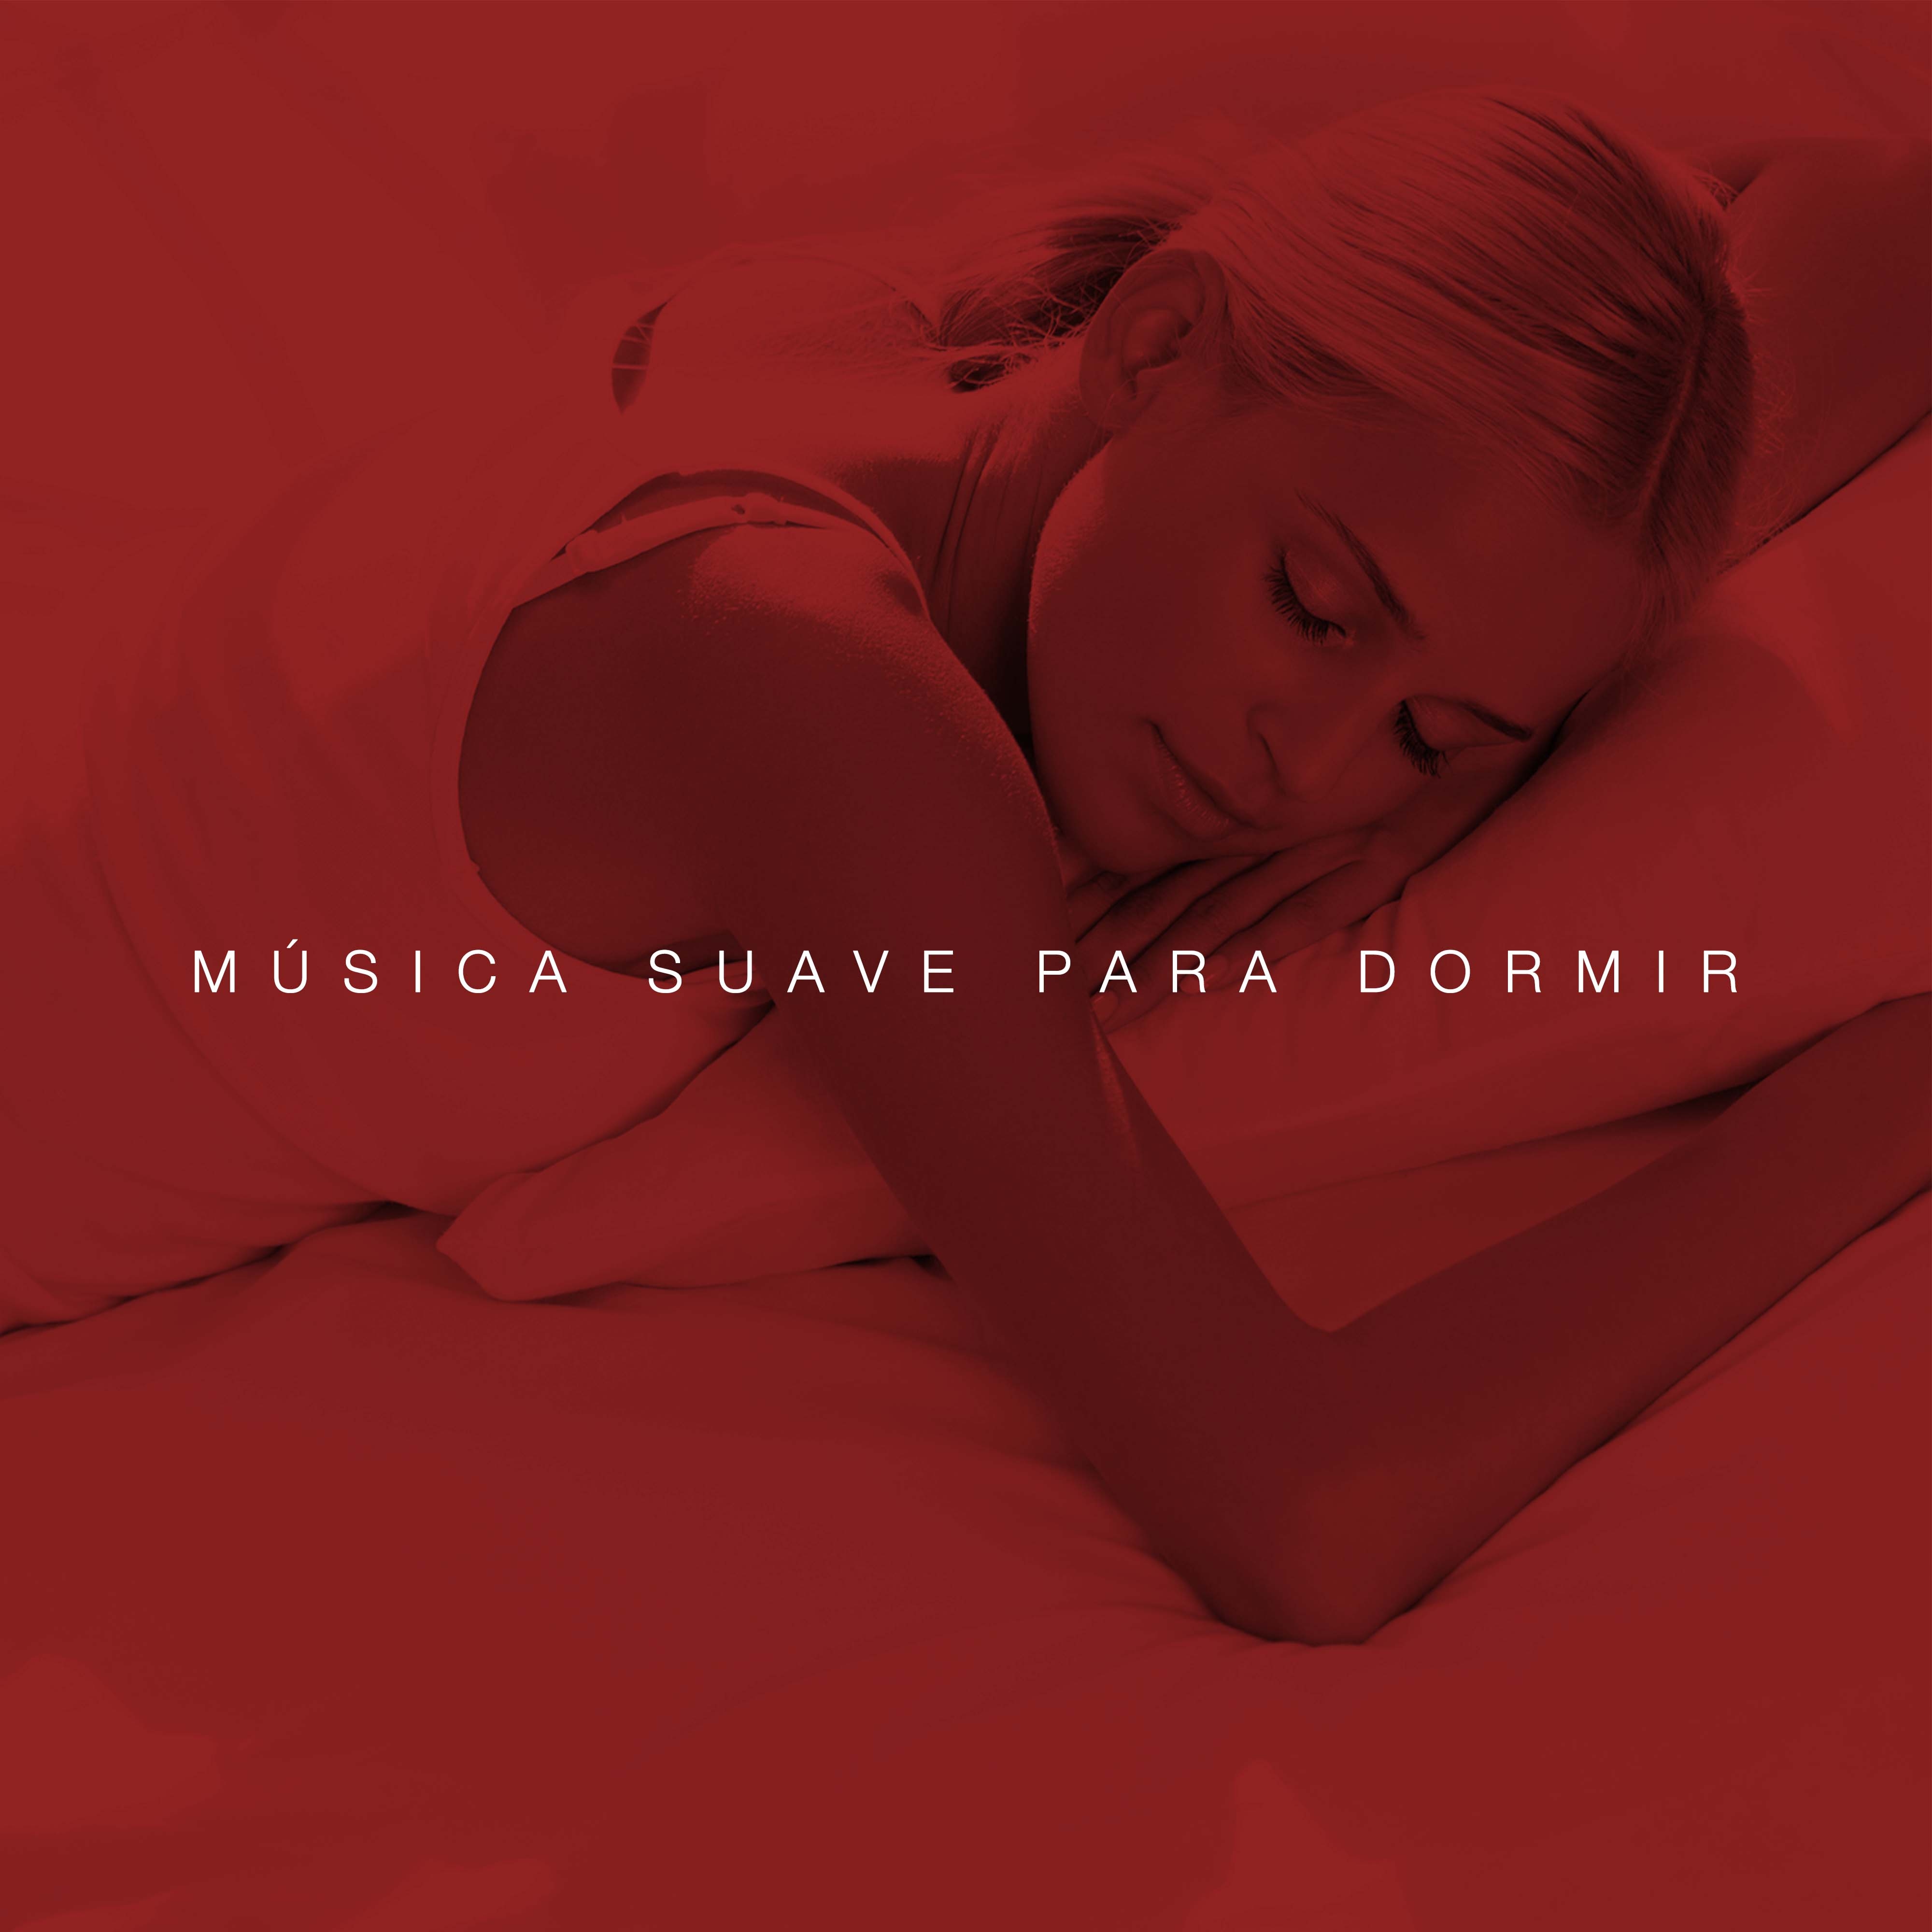 Musica Suave para Dormir: Mu sica Instrumental